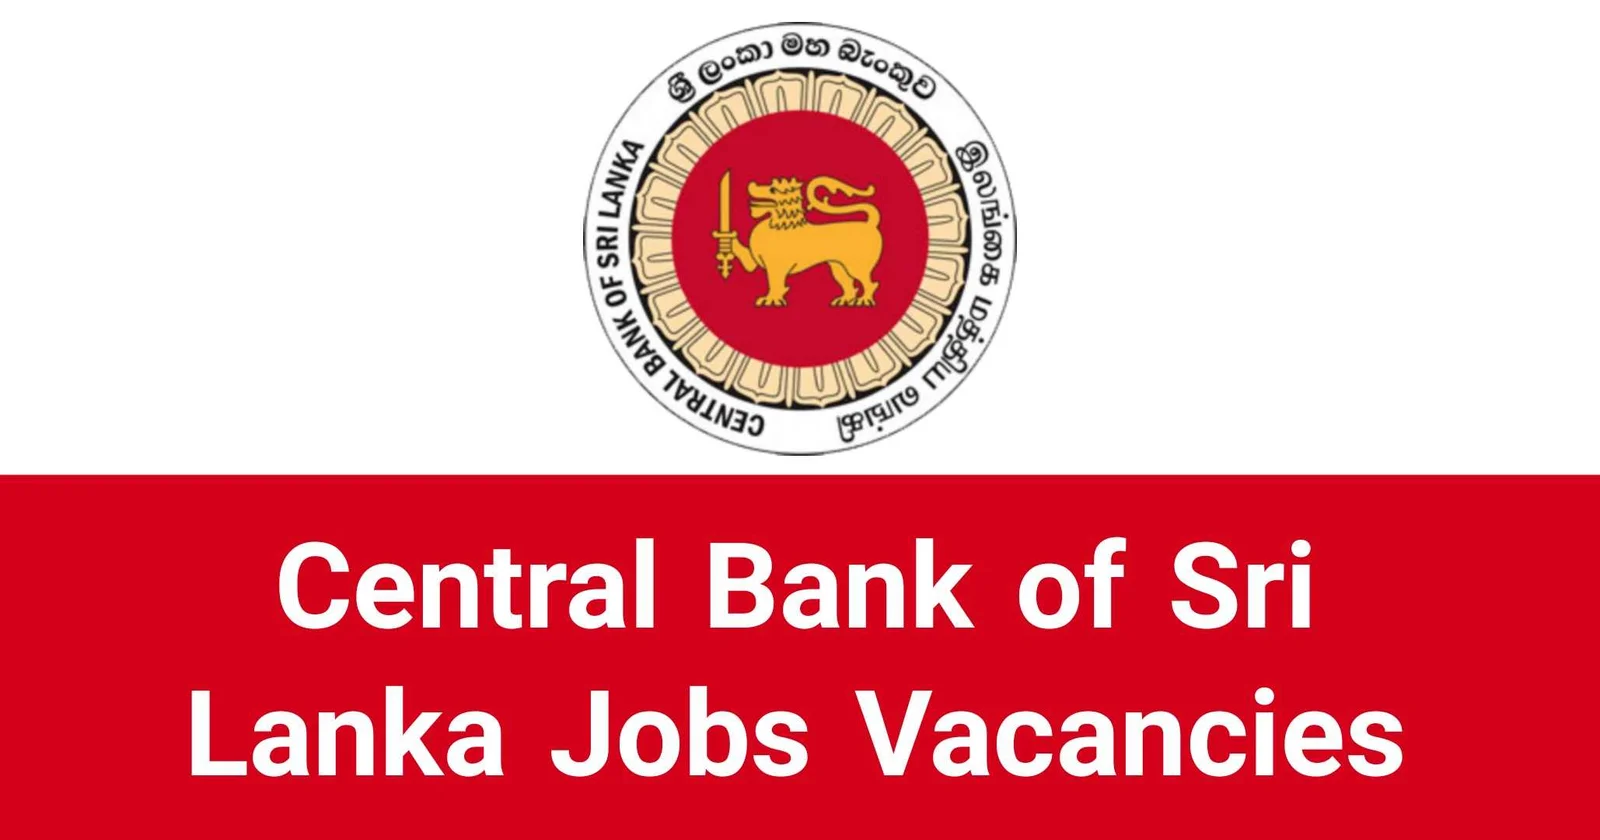 Central Bank of Sri Lanka Job Vacancies